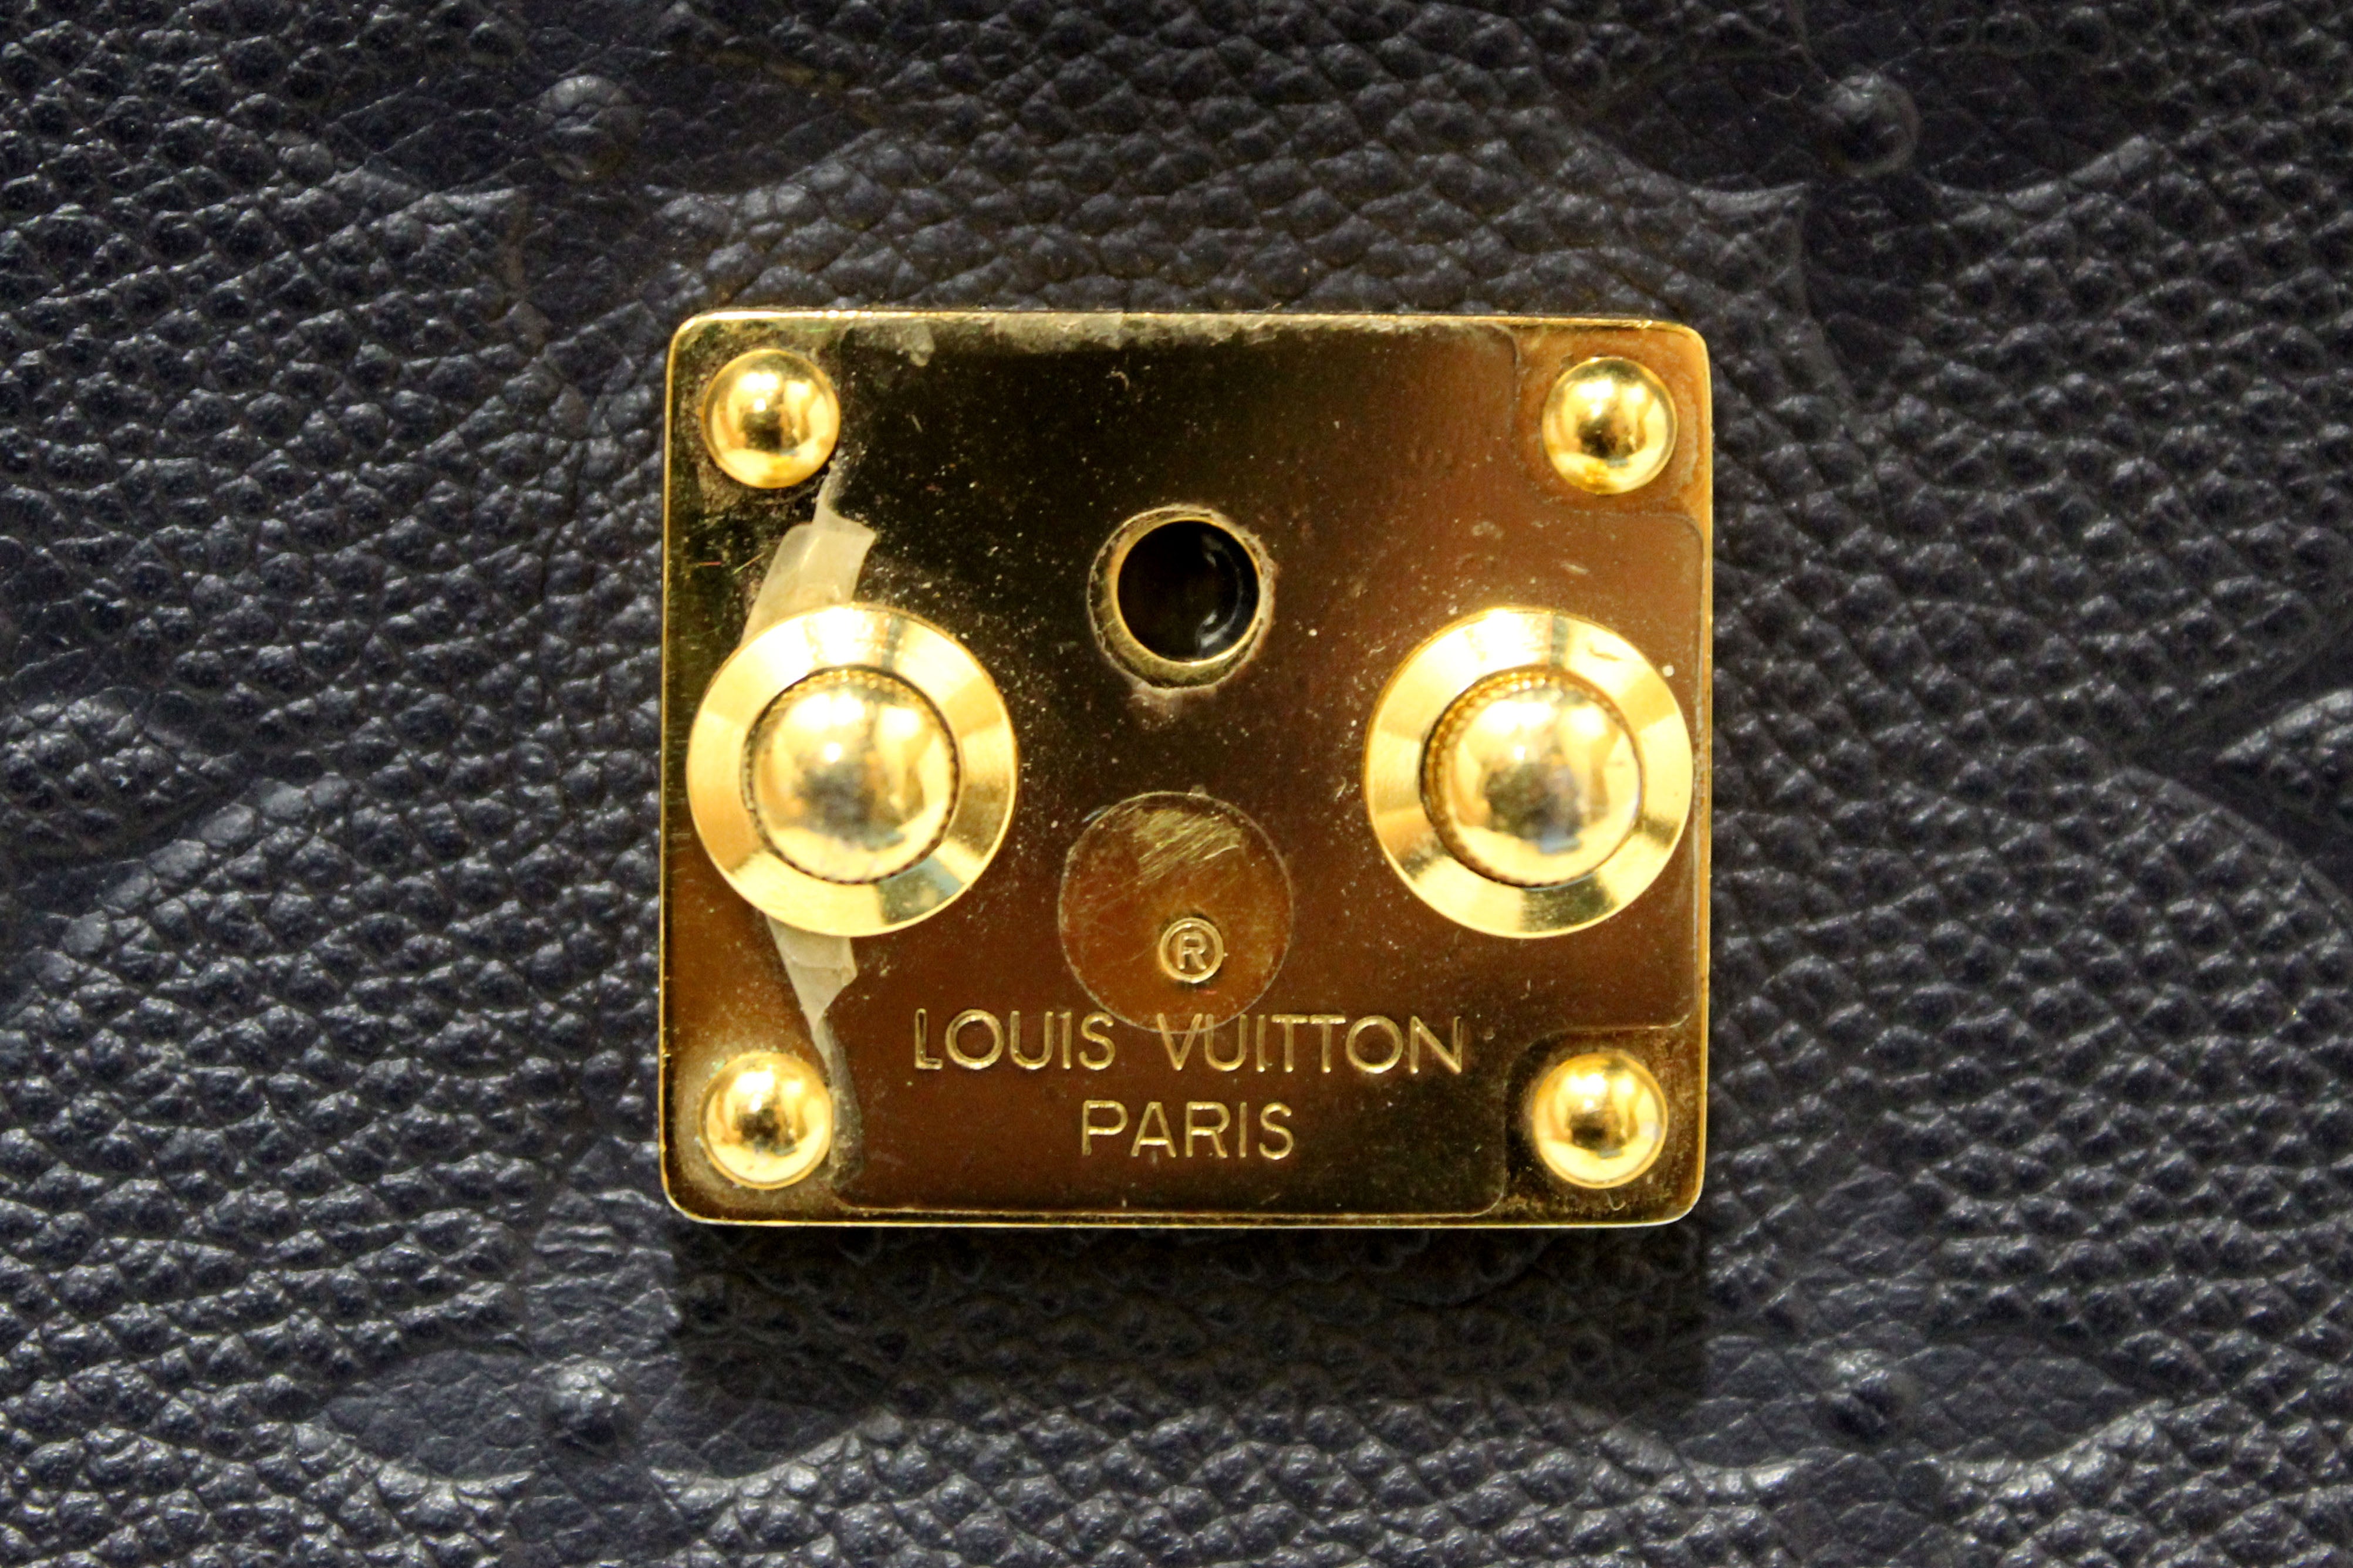 Authentic Louis Vuitton Blue Monogram Empreinte Leather Metis Pochette Messenger Bag